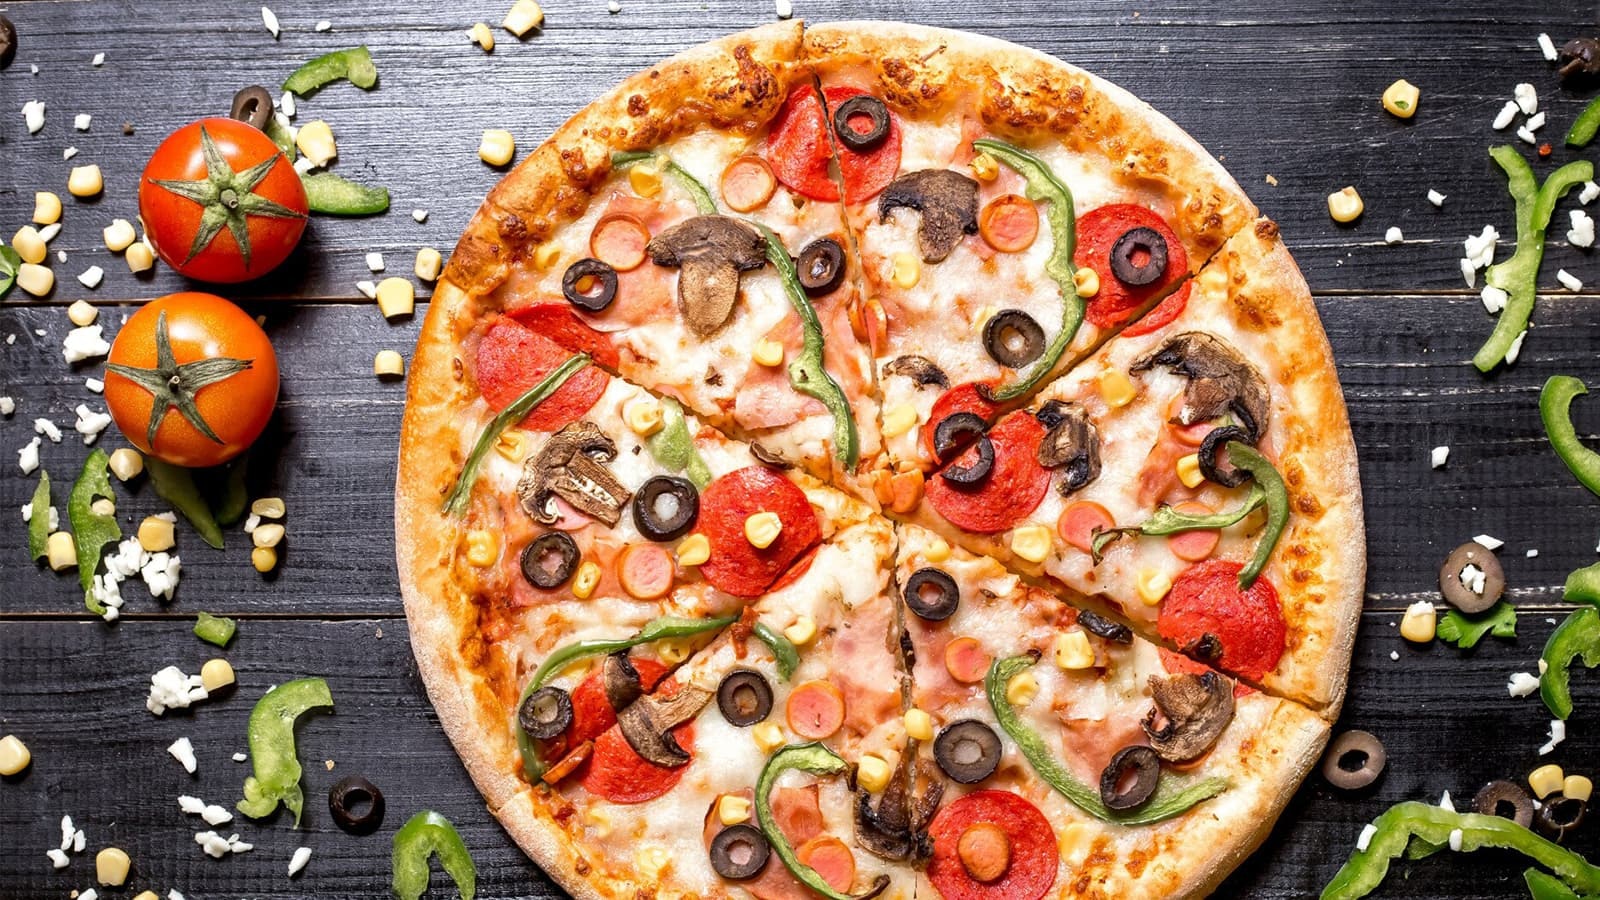 Die perfekte Low Carb Pizza backen. Bild von einer Low Carb Pizza und Zutaten auf einem Holztisch.